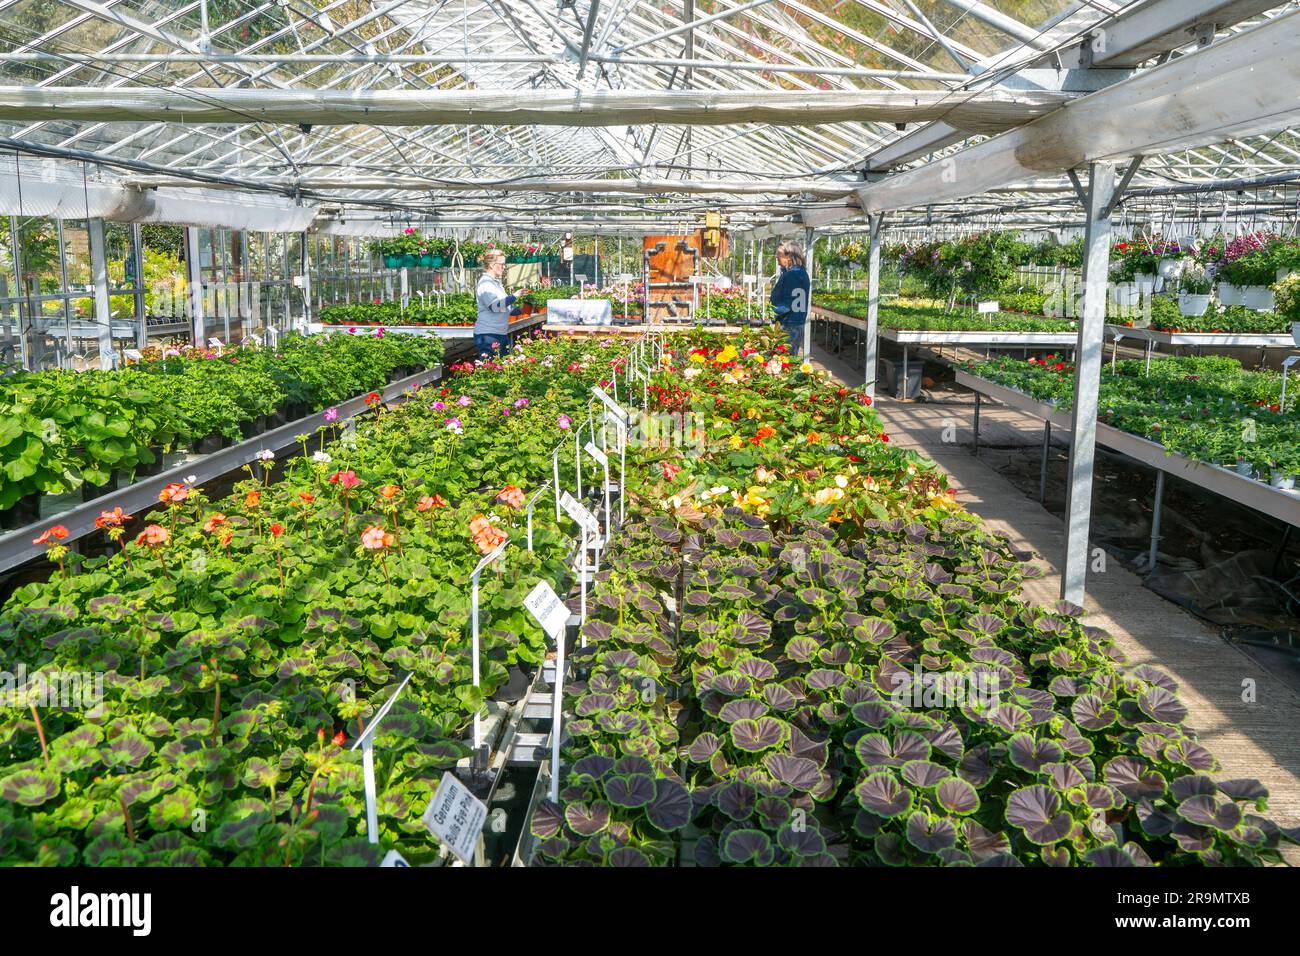 Plantas de geranio en maceta en exhibición dentro de invernadero de vivero de plantas, Ladybird Nurseries, Snape, Suffolk, Inglaterra, REINO UNIDO Foto de stock